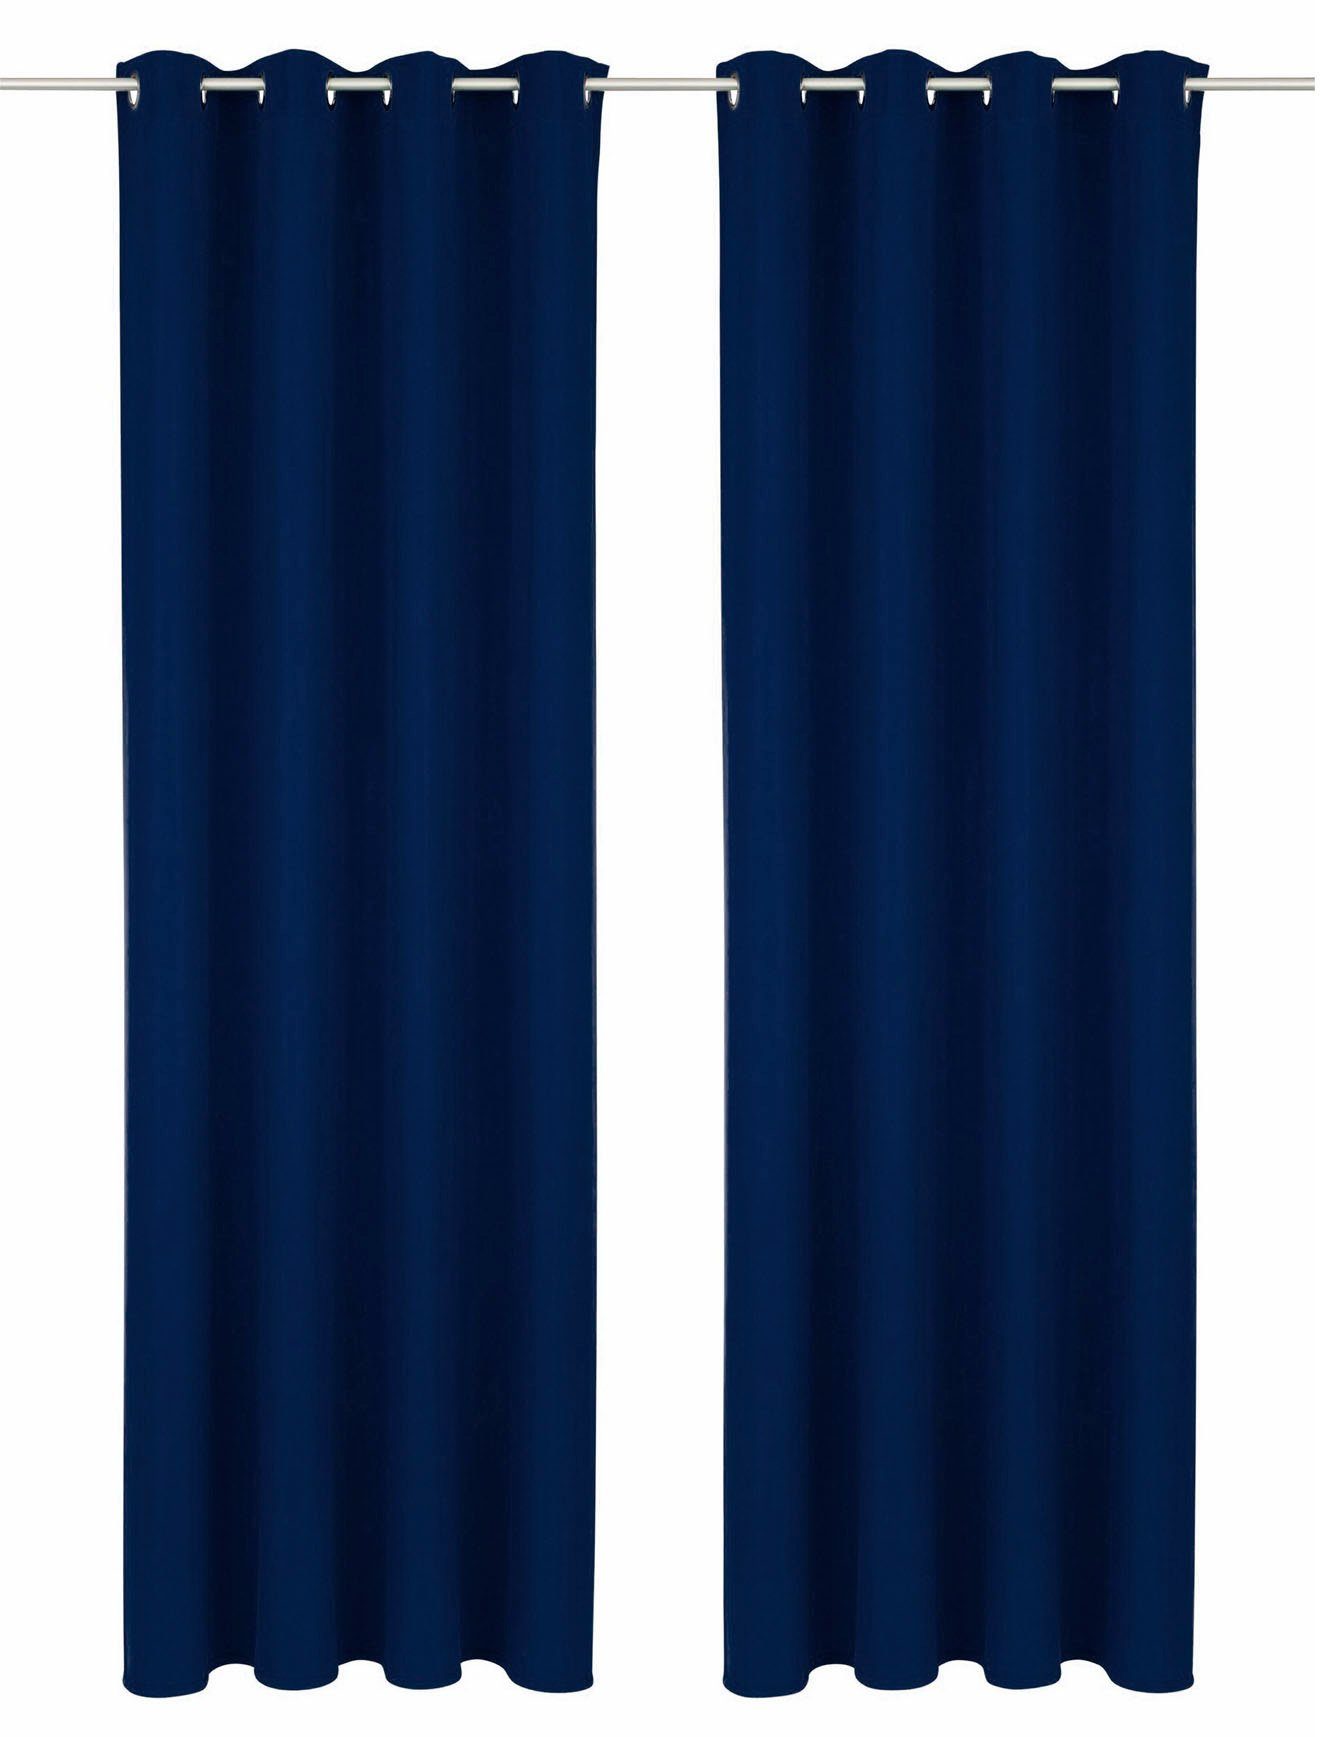 Vorhang Lagan, Bruno Banani, Ösen (2 St), blickdicht, Polyester, Set, blickdicht, gewebt, Microfaser, verschiedene Größen, einfarbig dunkelblau